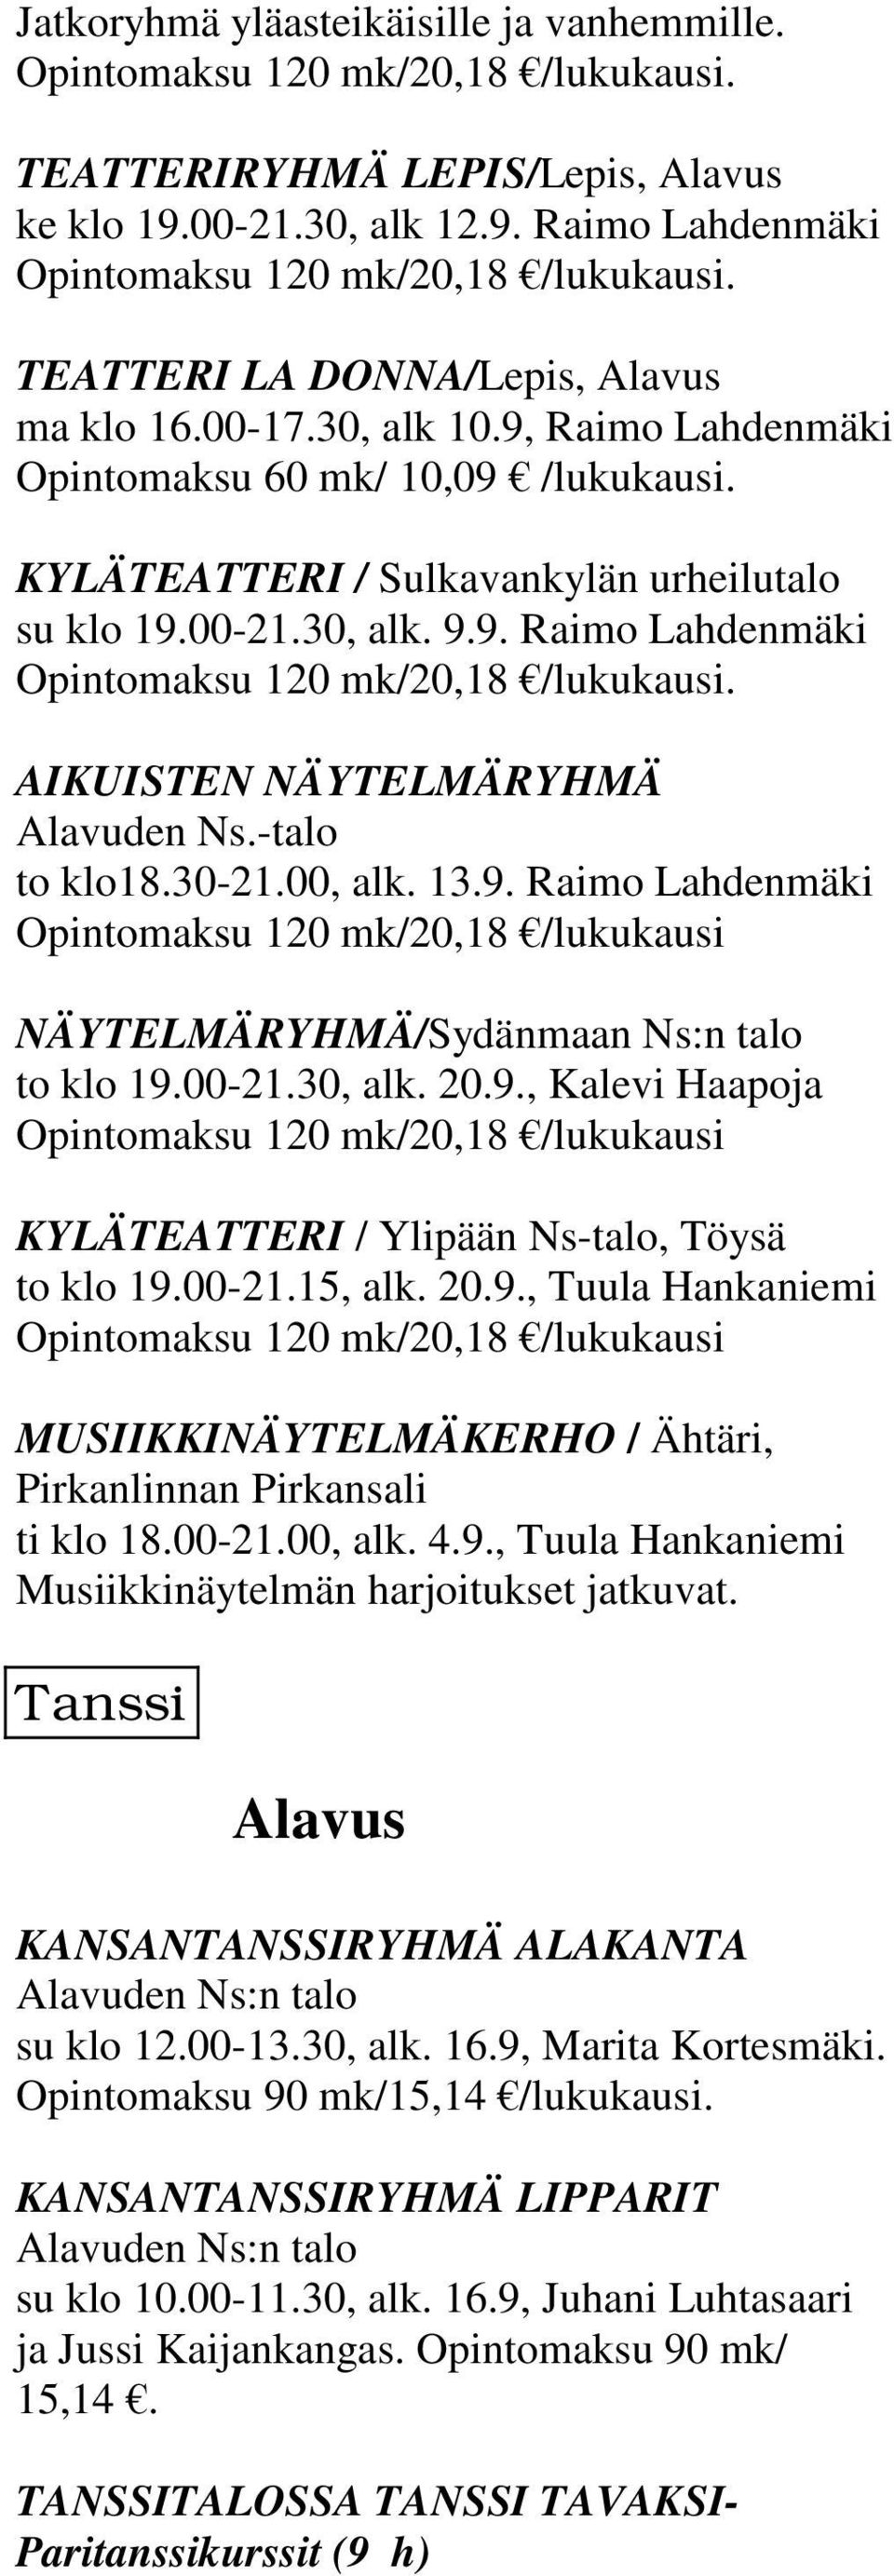 AIKUISTEN NÄYTELMÄRYHMÄ Alavuden Ns.-talo to klo18.30-21.00, alk. 13.9. Raimo Lahdenmäki Opintomaksu 120 mk/20,18 /lukukausi NÄYTELMÄRYHMÄ/Sydänmaan Ns:n talo to klo 19.00-21.30, alk. 20.9., Kalevi Haapoja Opintomaksu 120 mk/20,18 /lukukausi KYLÄTEATTERI / Ylipään Ns-talo, Töysä to klo 19.